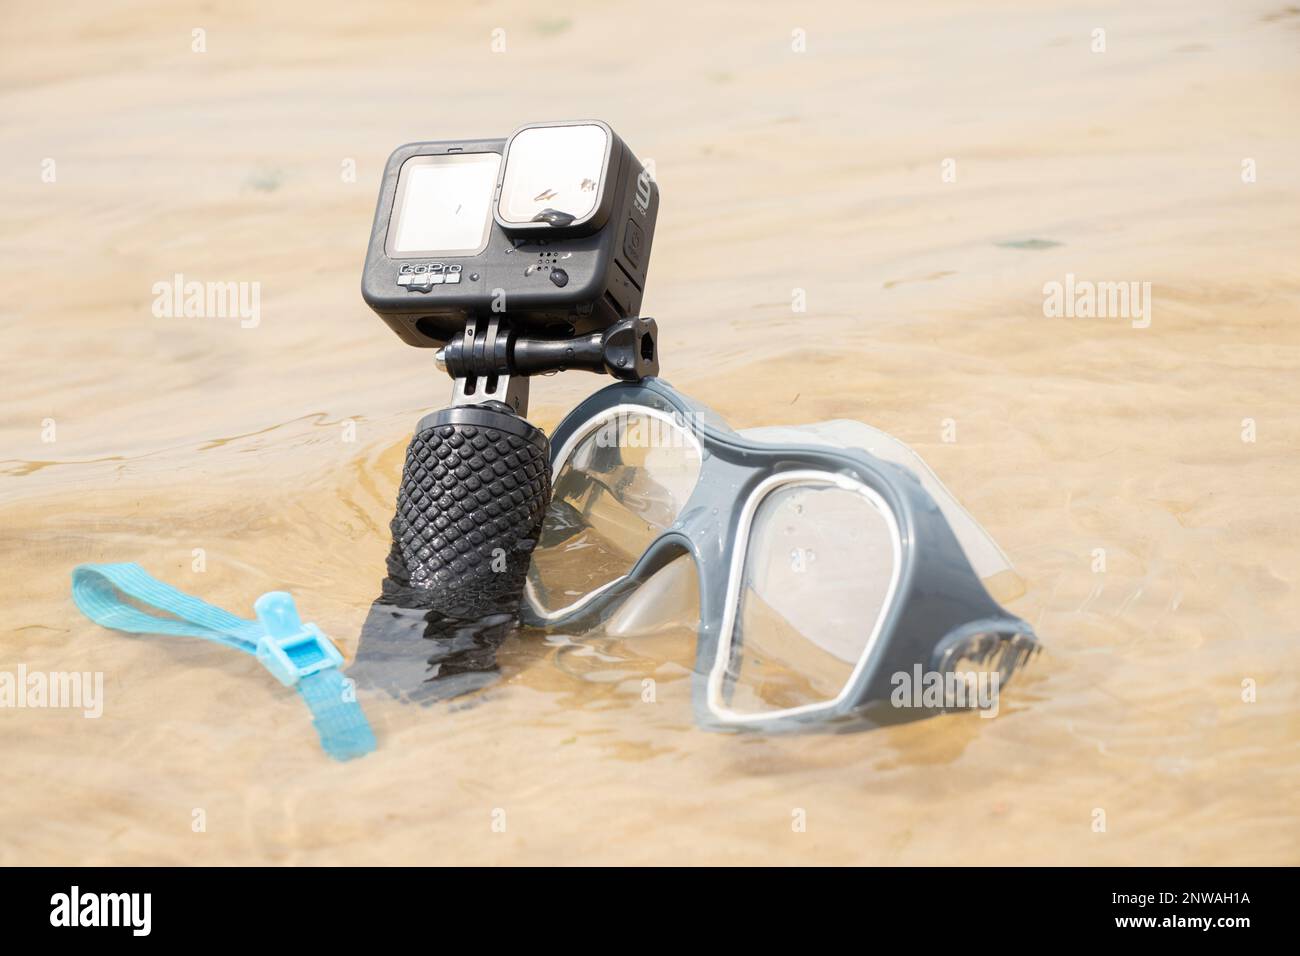 Ucraina Dnipro 05.08.2021 - fotocamera e maschera GoPro HERO 9 per immersioni in spiaggia in riva al lago, Action camera sul lago Foto Stock